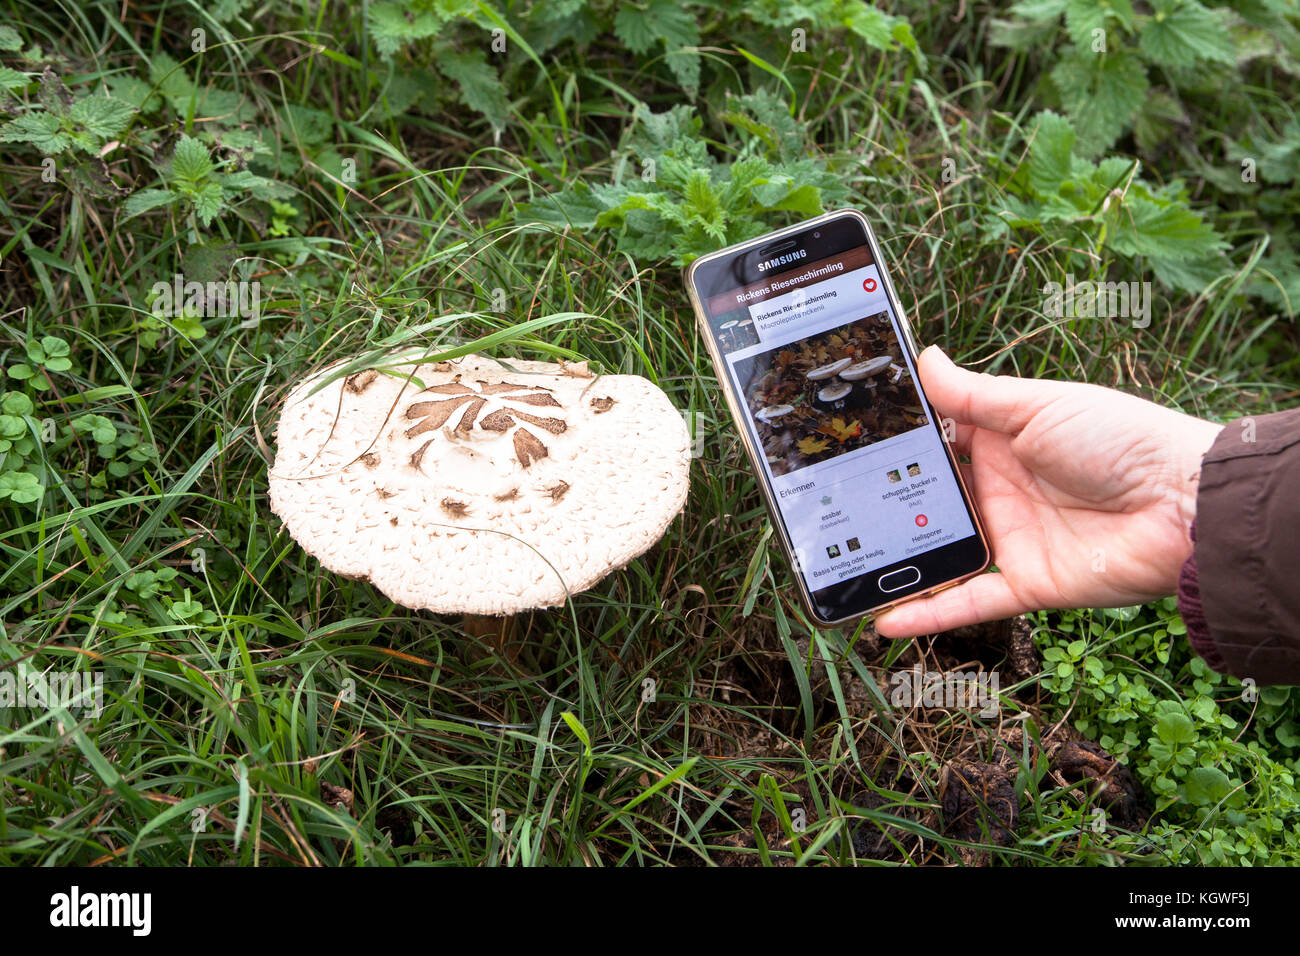 mushroom identification using a smartphone app, parasol mushroom.  Bestimmung eines Pilzes mit Hilfe einer Smartphone App, Riesenschirmling. Stock Photo